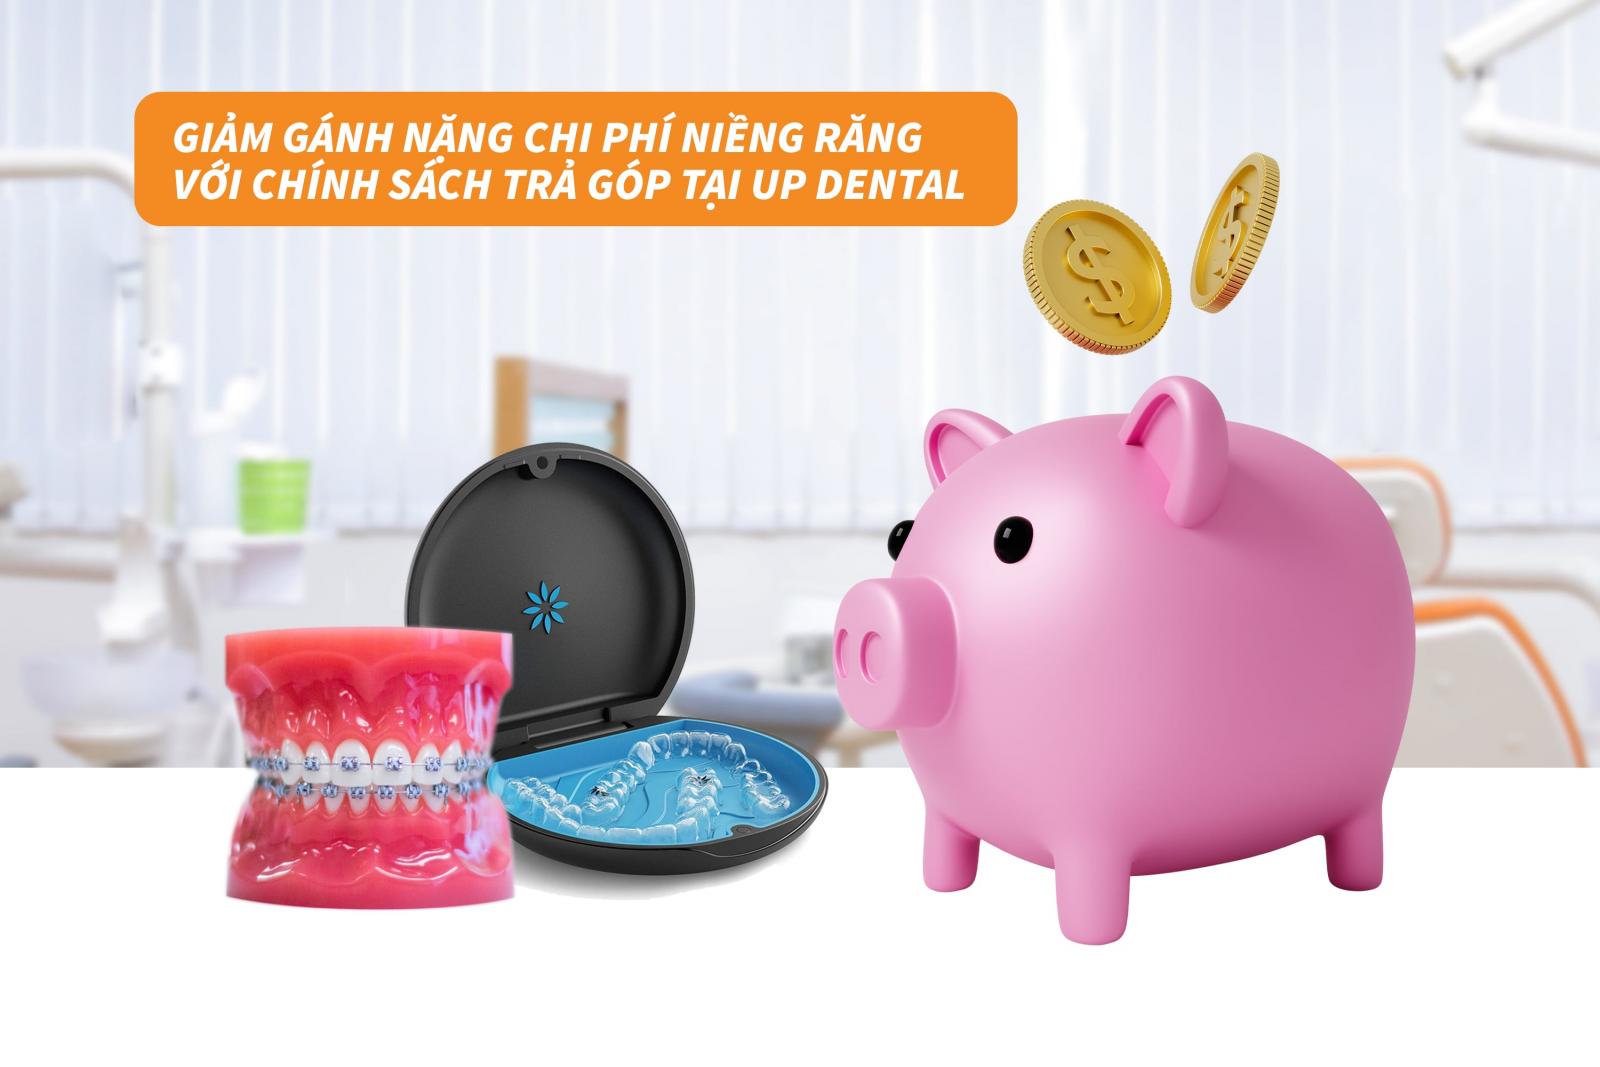 Giảm gánh nặng chi phí niềng răng với chính sách trả góp tại Up Dental 